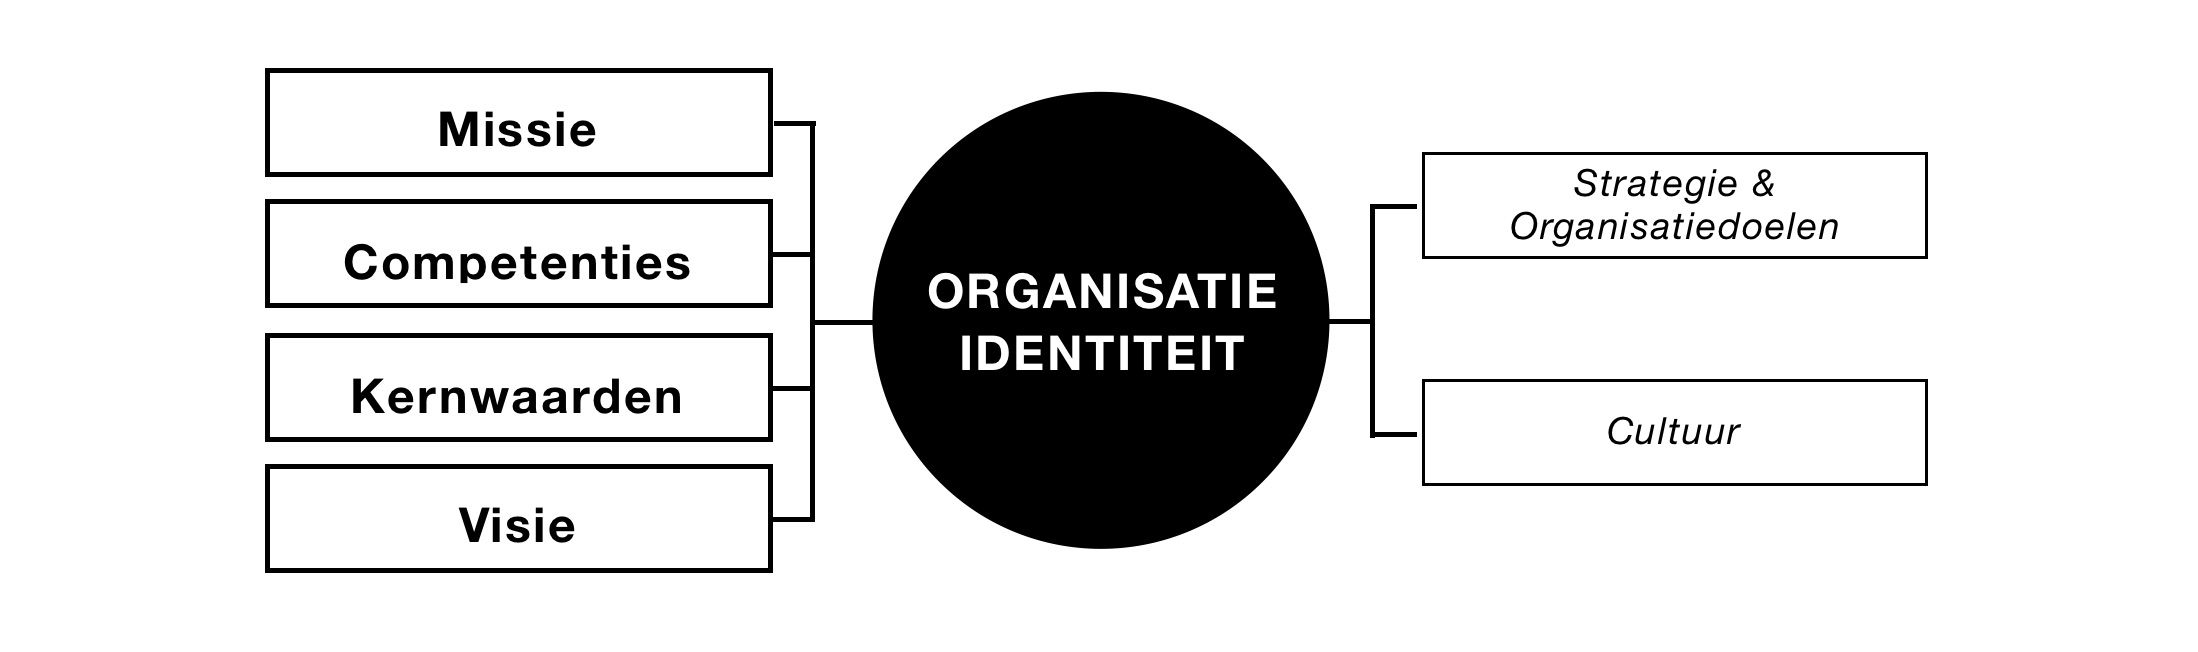 De organisatie-identiteit in een afbeelding